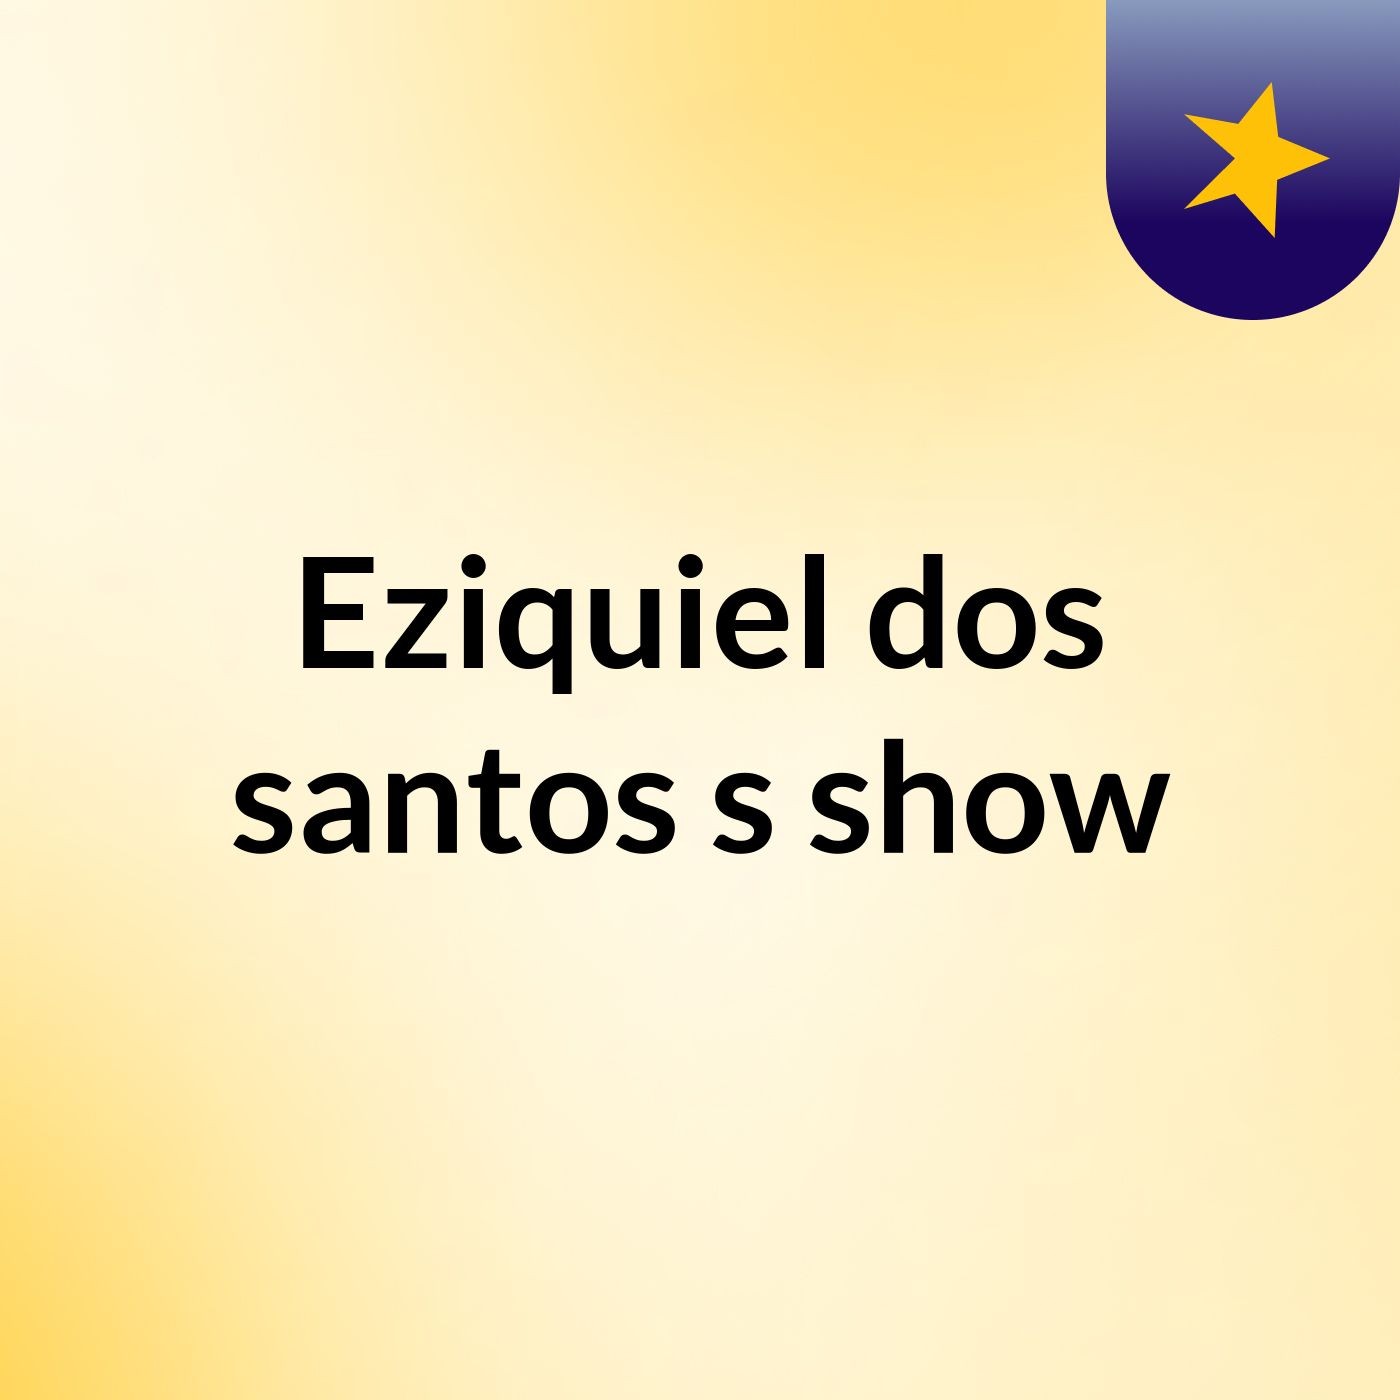 Eziquiel dos santos's show